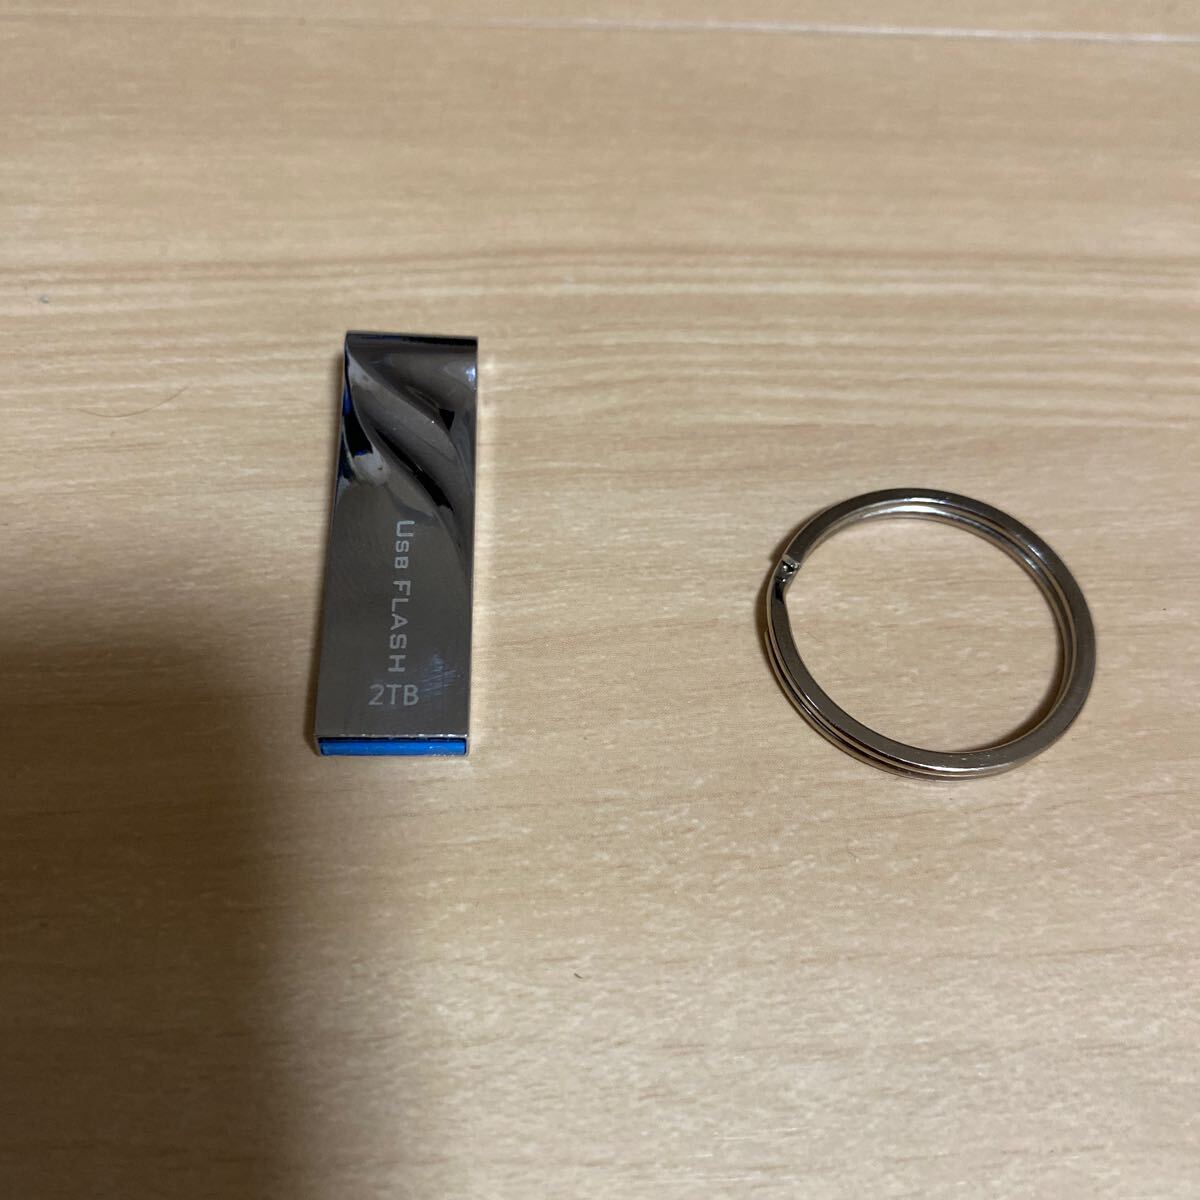 USB フラッシュドライブ 2TB USB 3.0 Lightning 2TB 高速転送 USB フラッシュドライブ 防水 防塵 耐衝撃